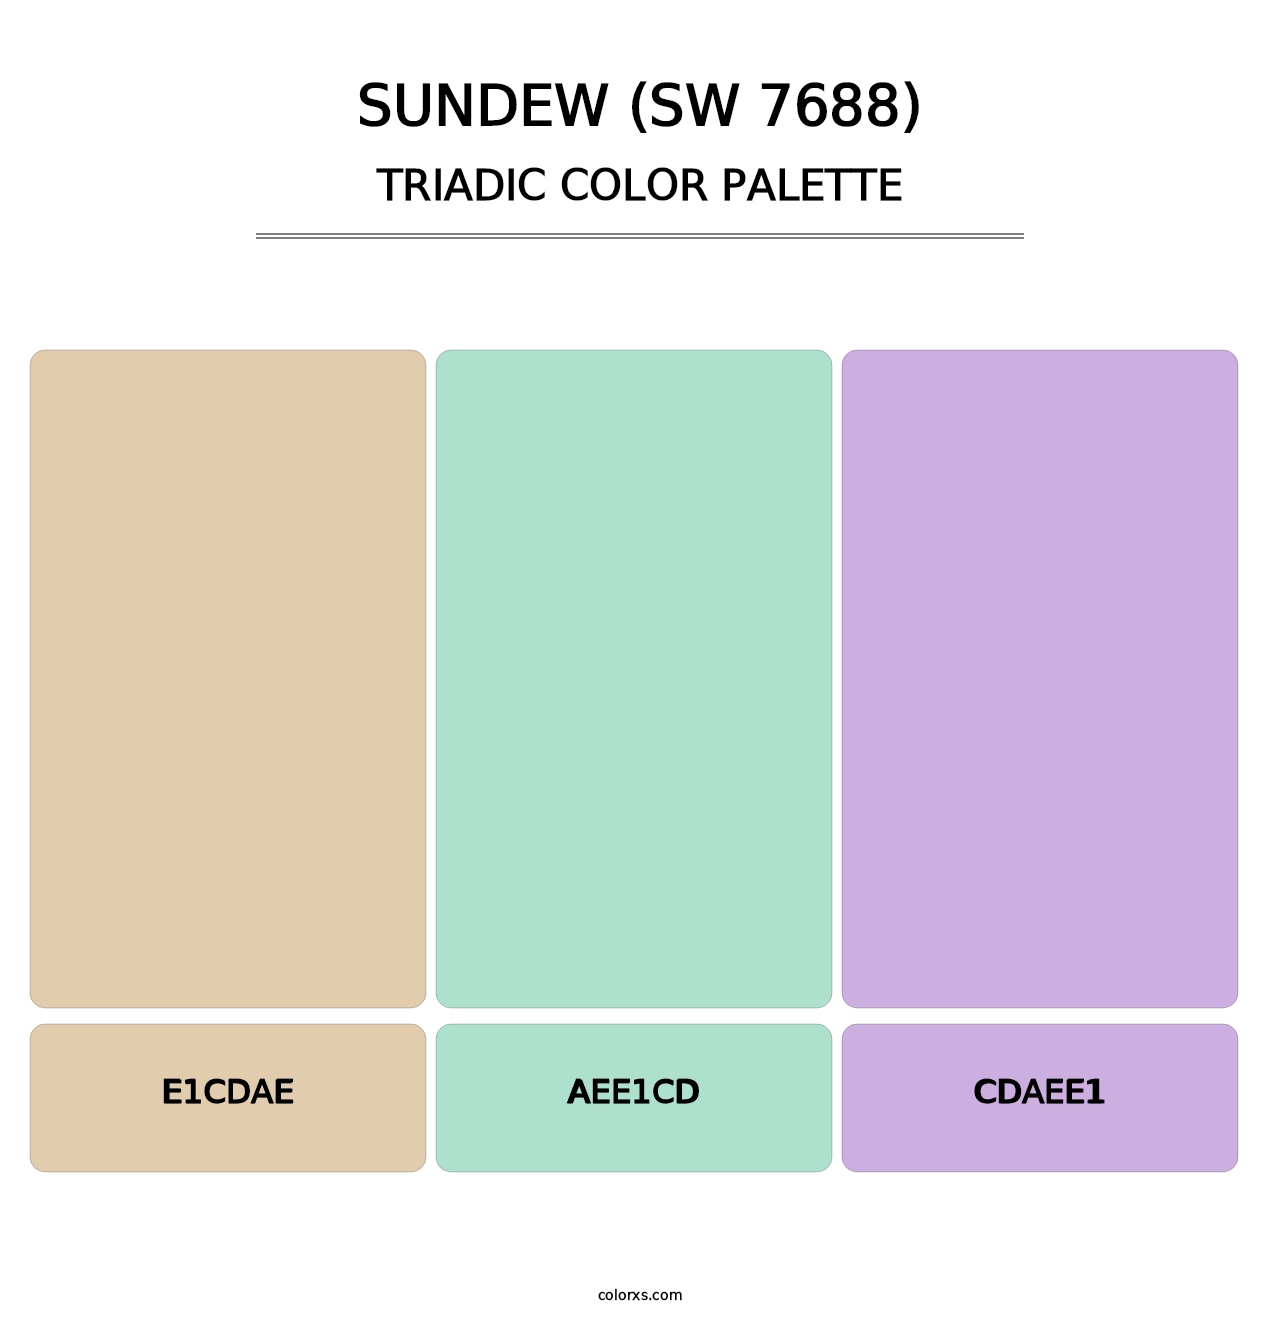 Sundew (SW 7688) - Triadic Color Palette